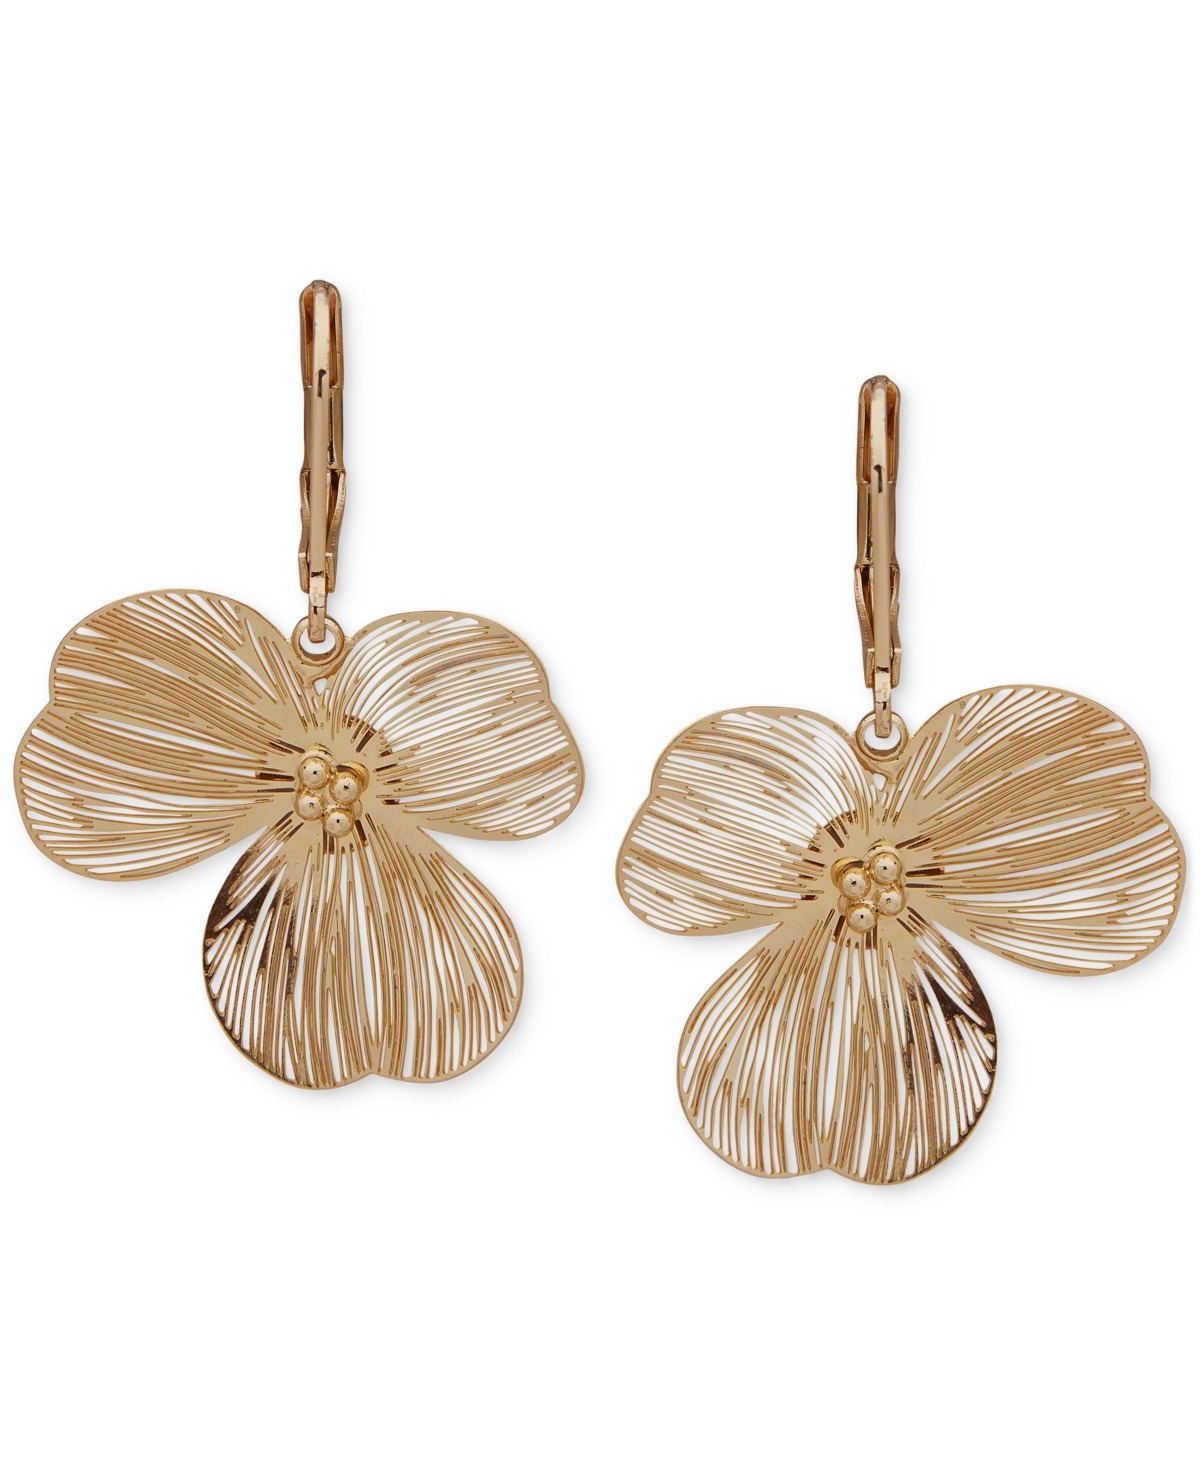 Gold-Tone Open Flower Leverback Drop Earrings - Coral